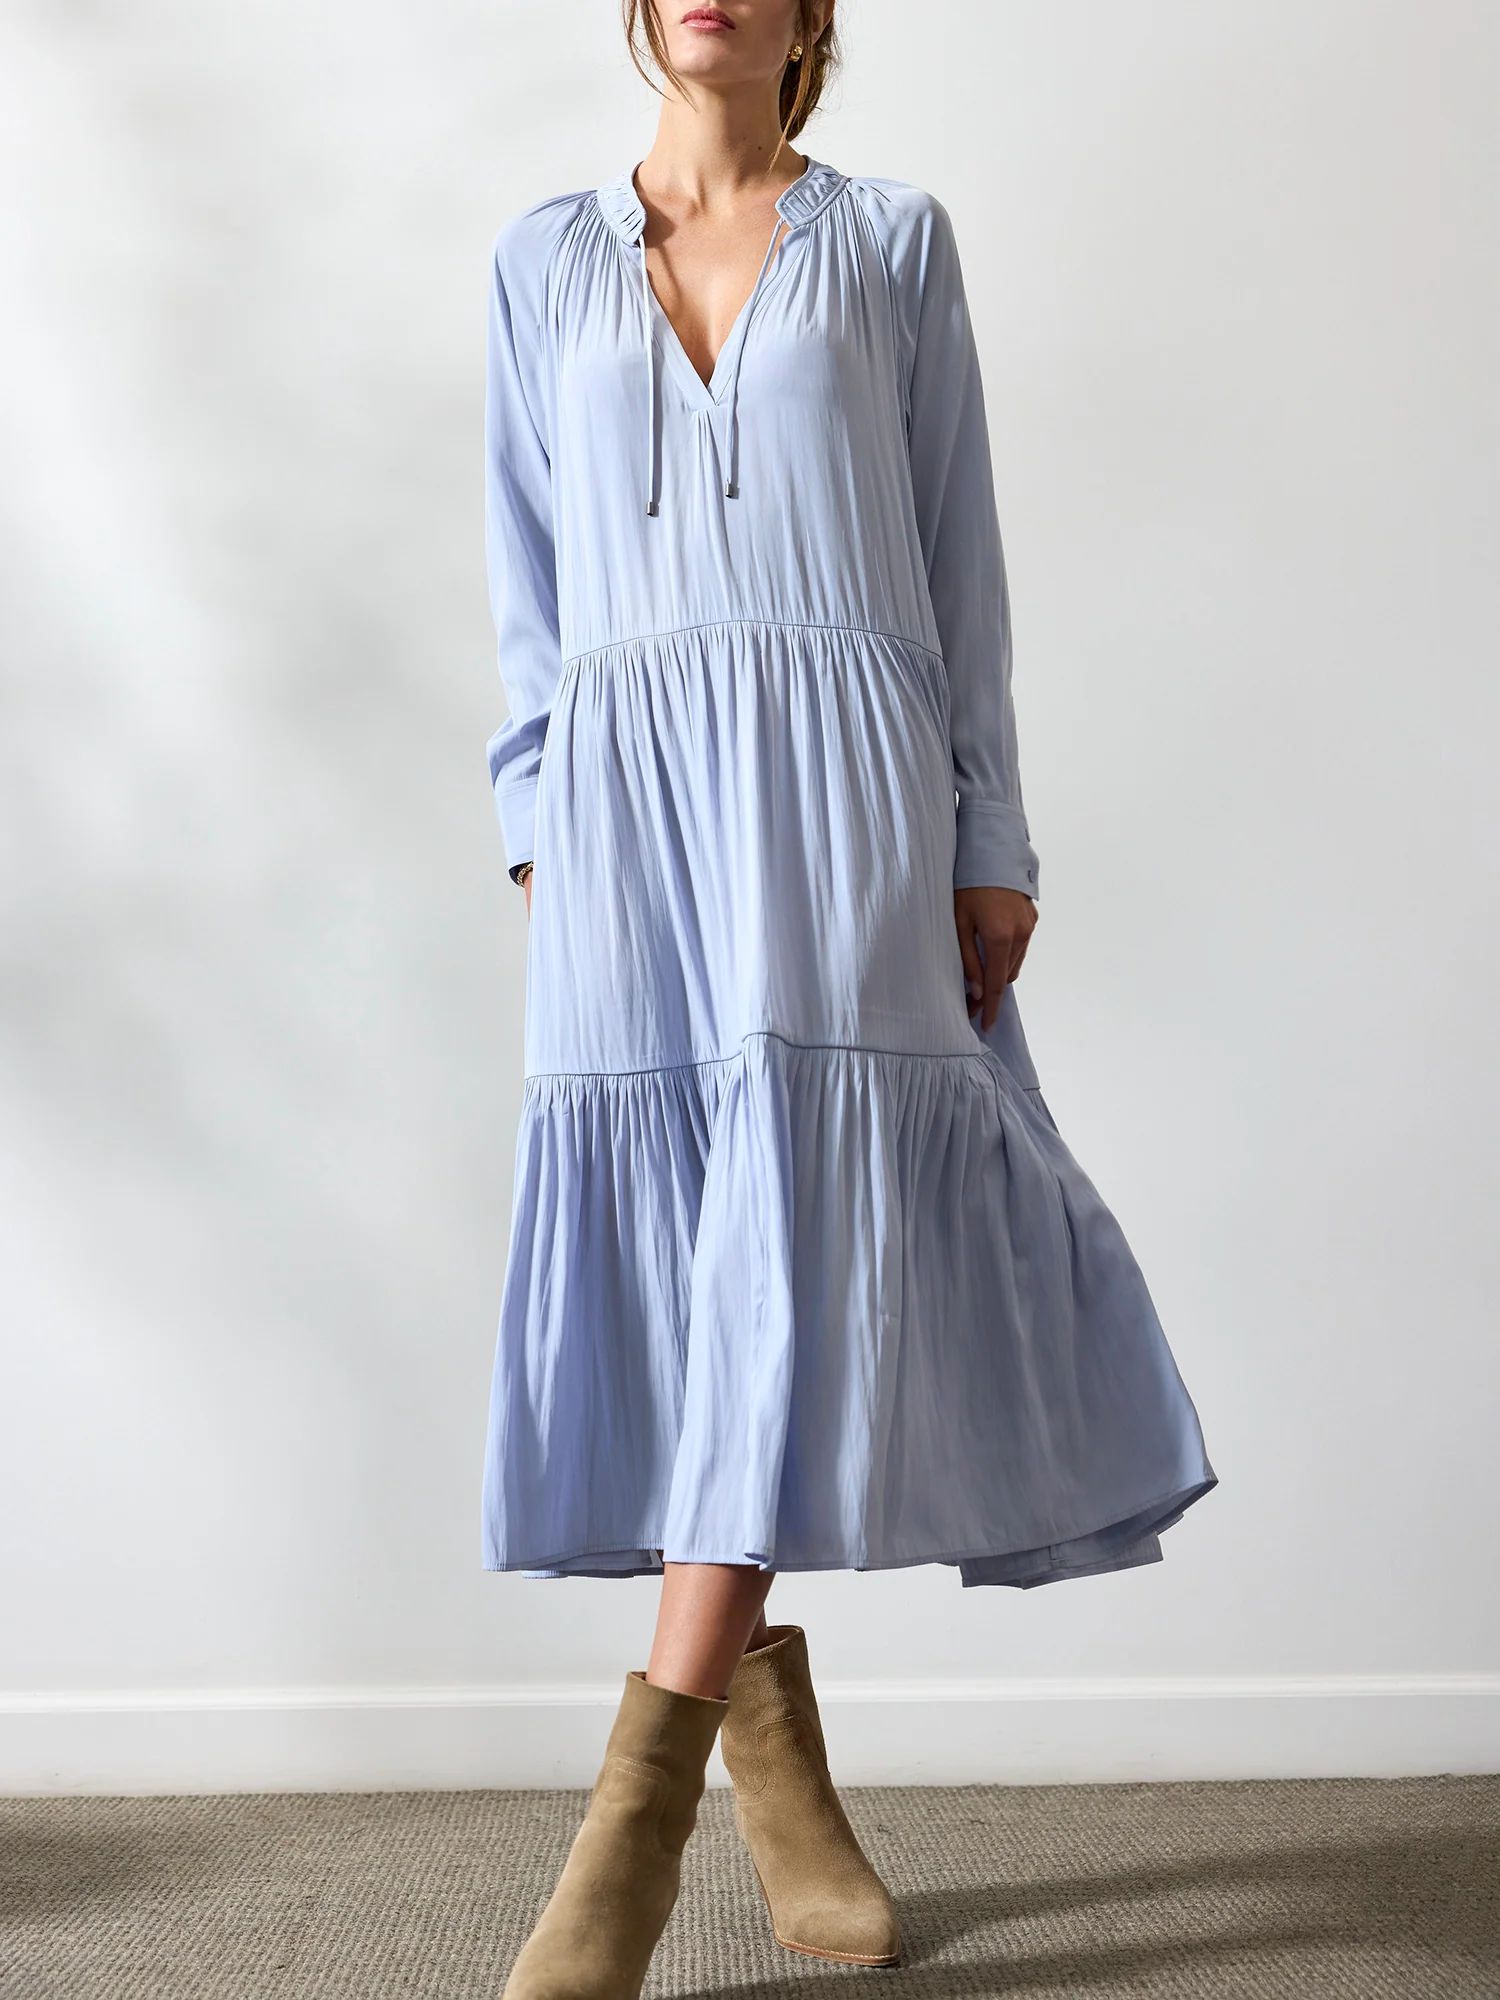 Brochu Walker | Women's Alana Dress in Light Blue | Brochu Walker